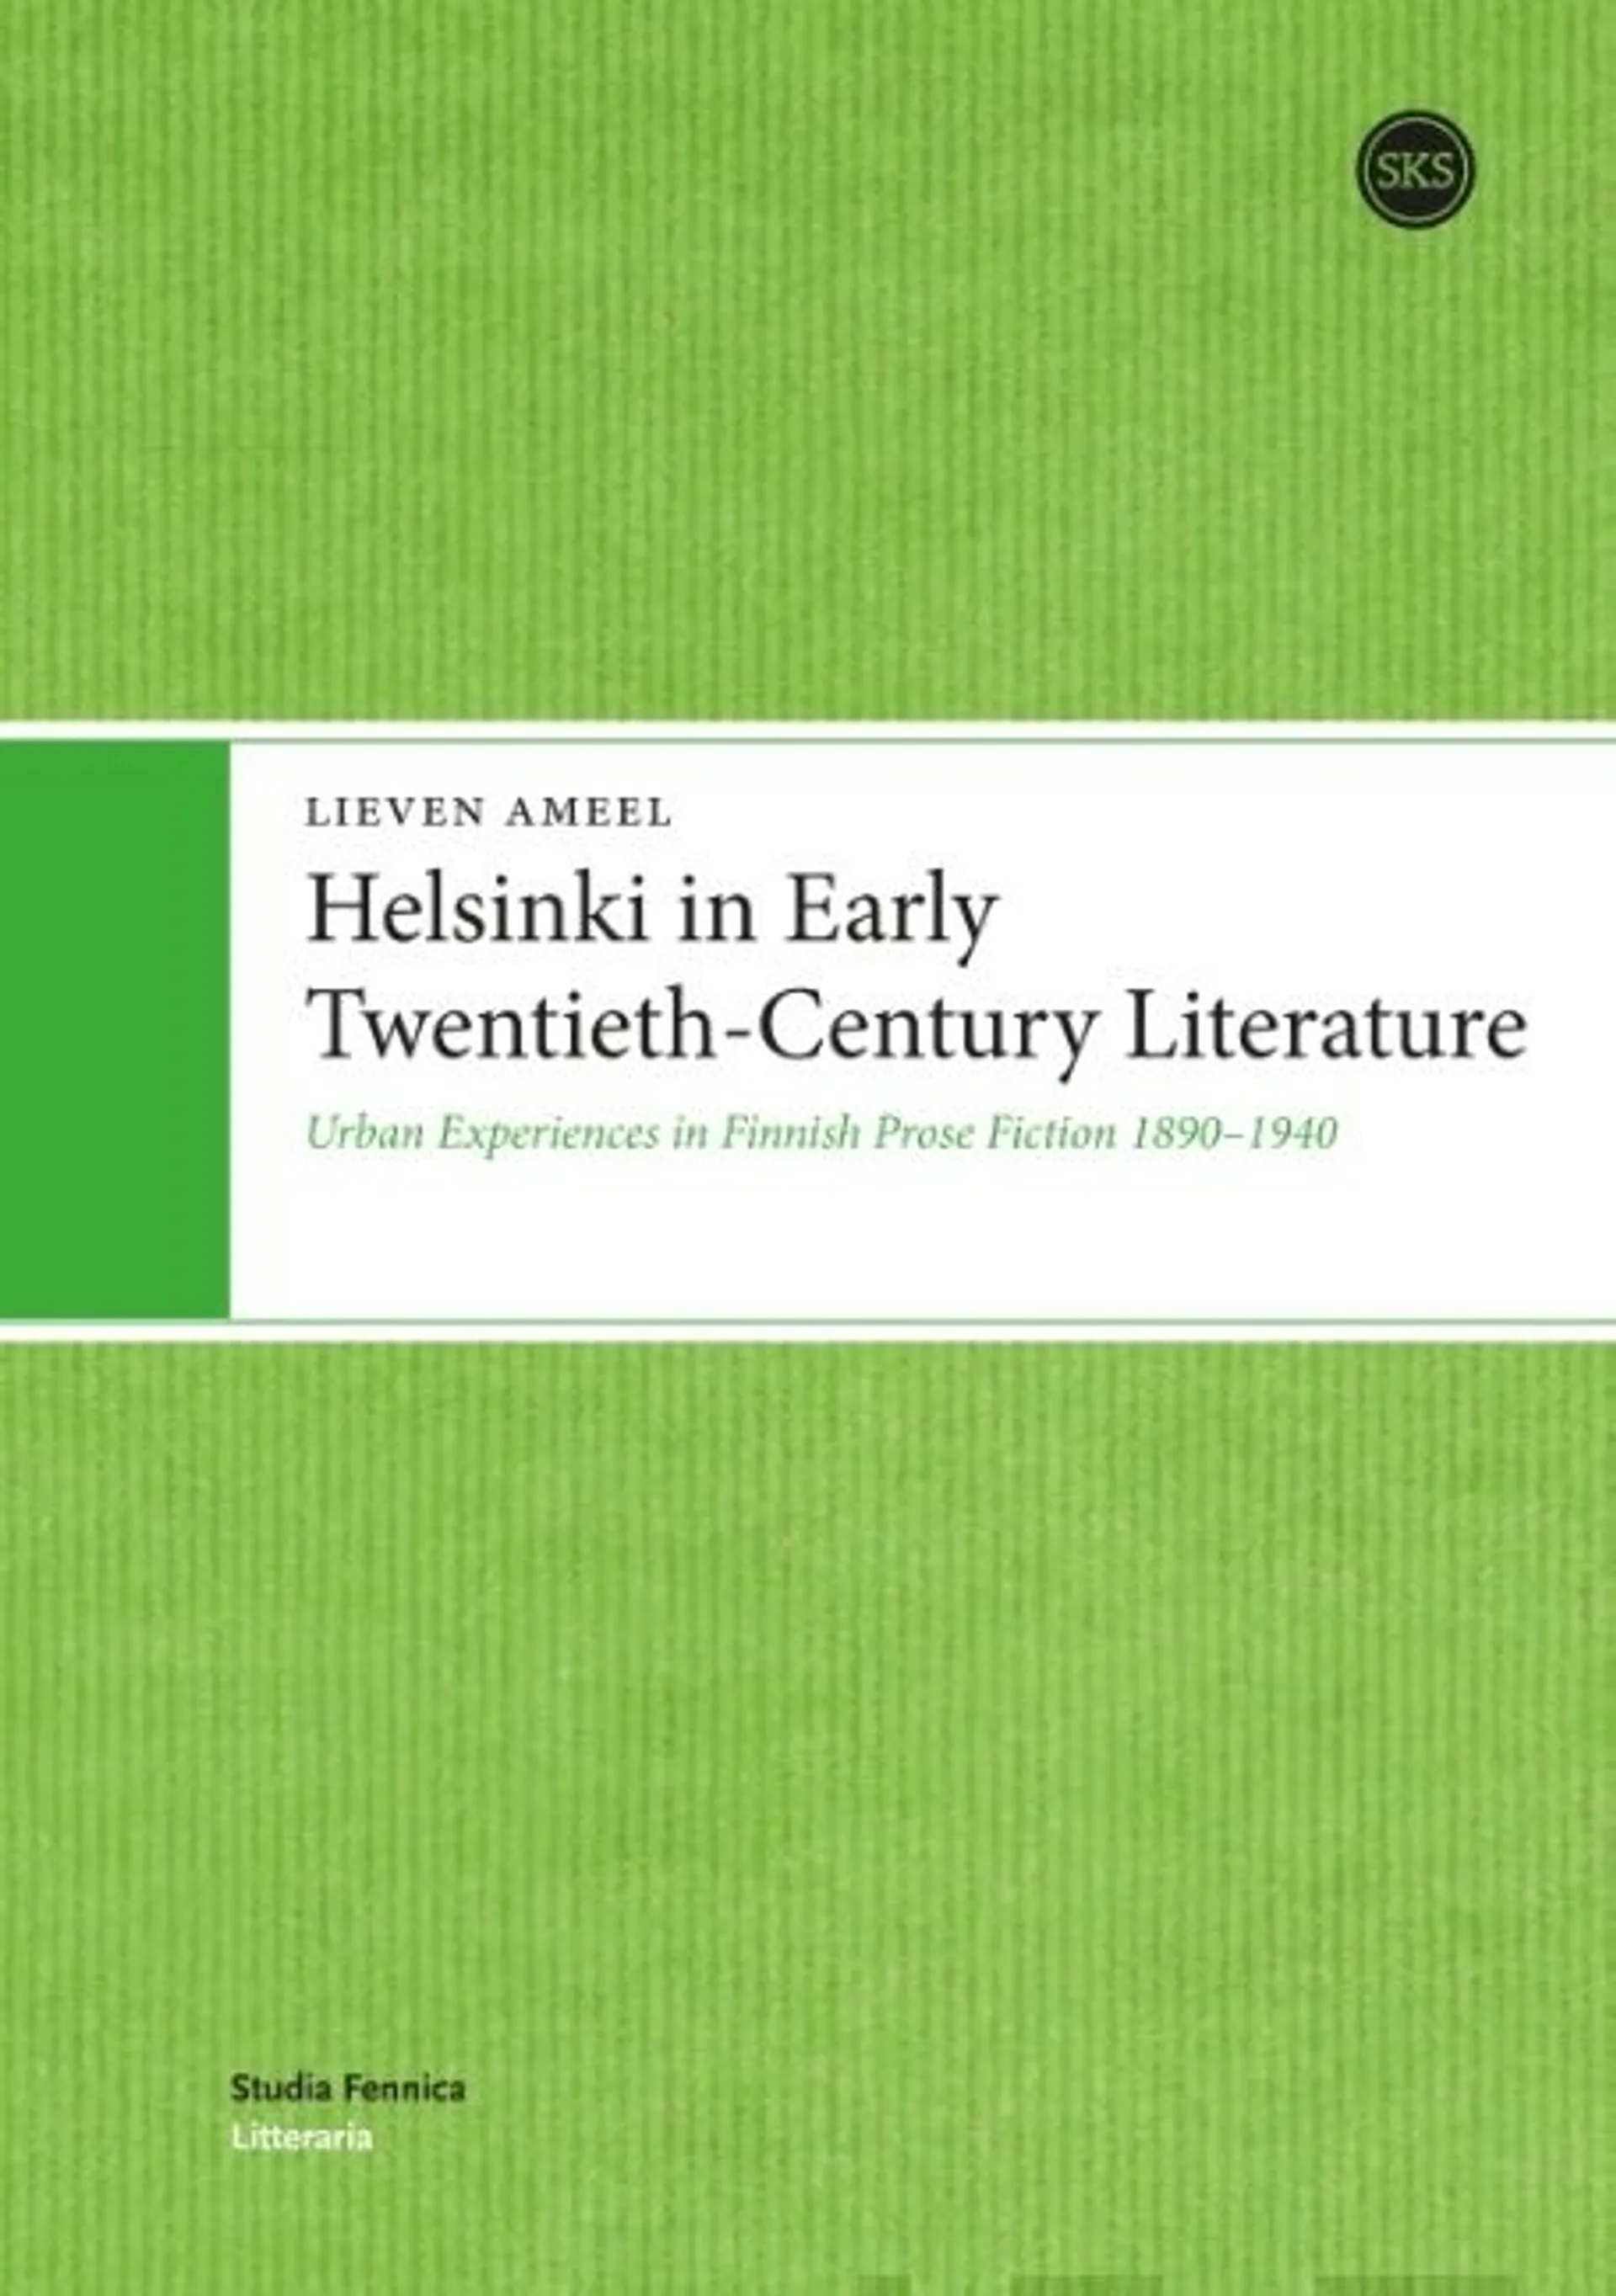 Ameel, Helsinki in Early Twentieth-Century Literature